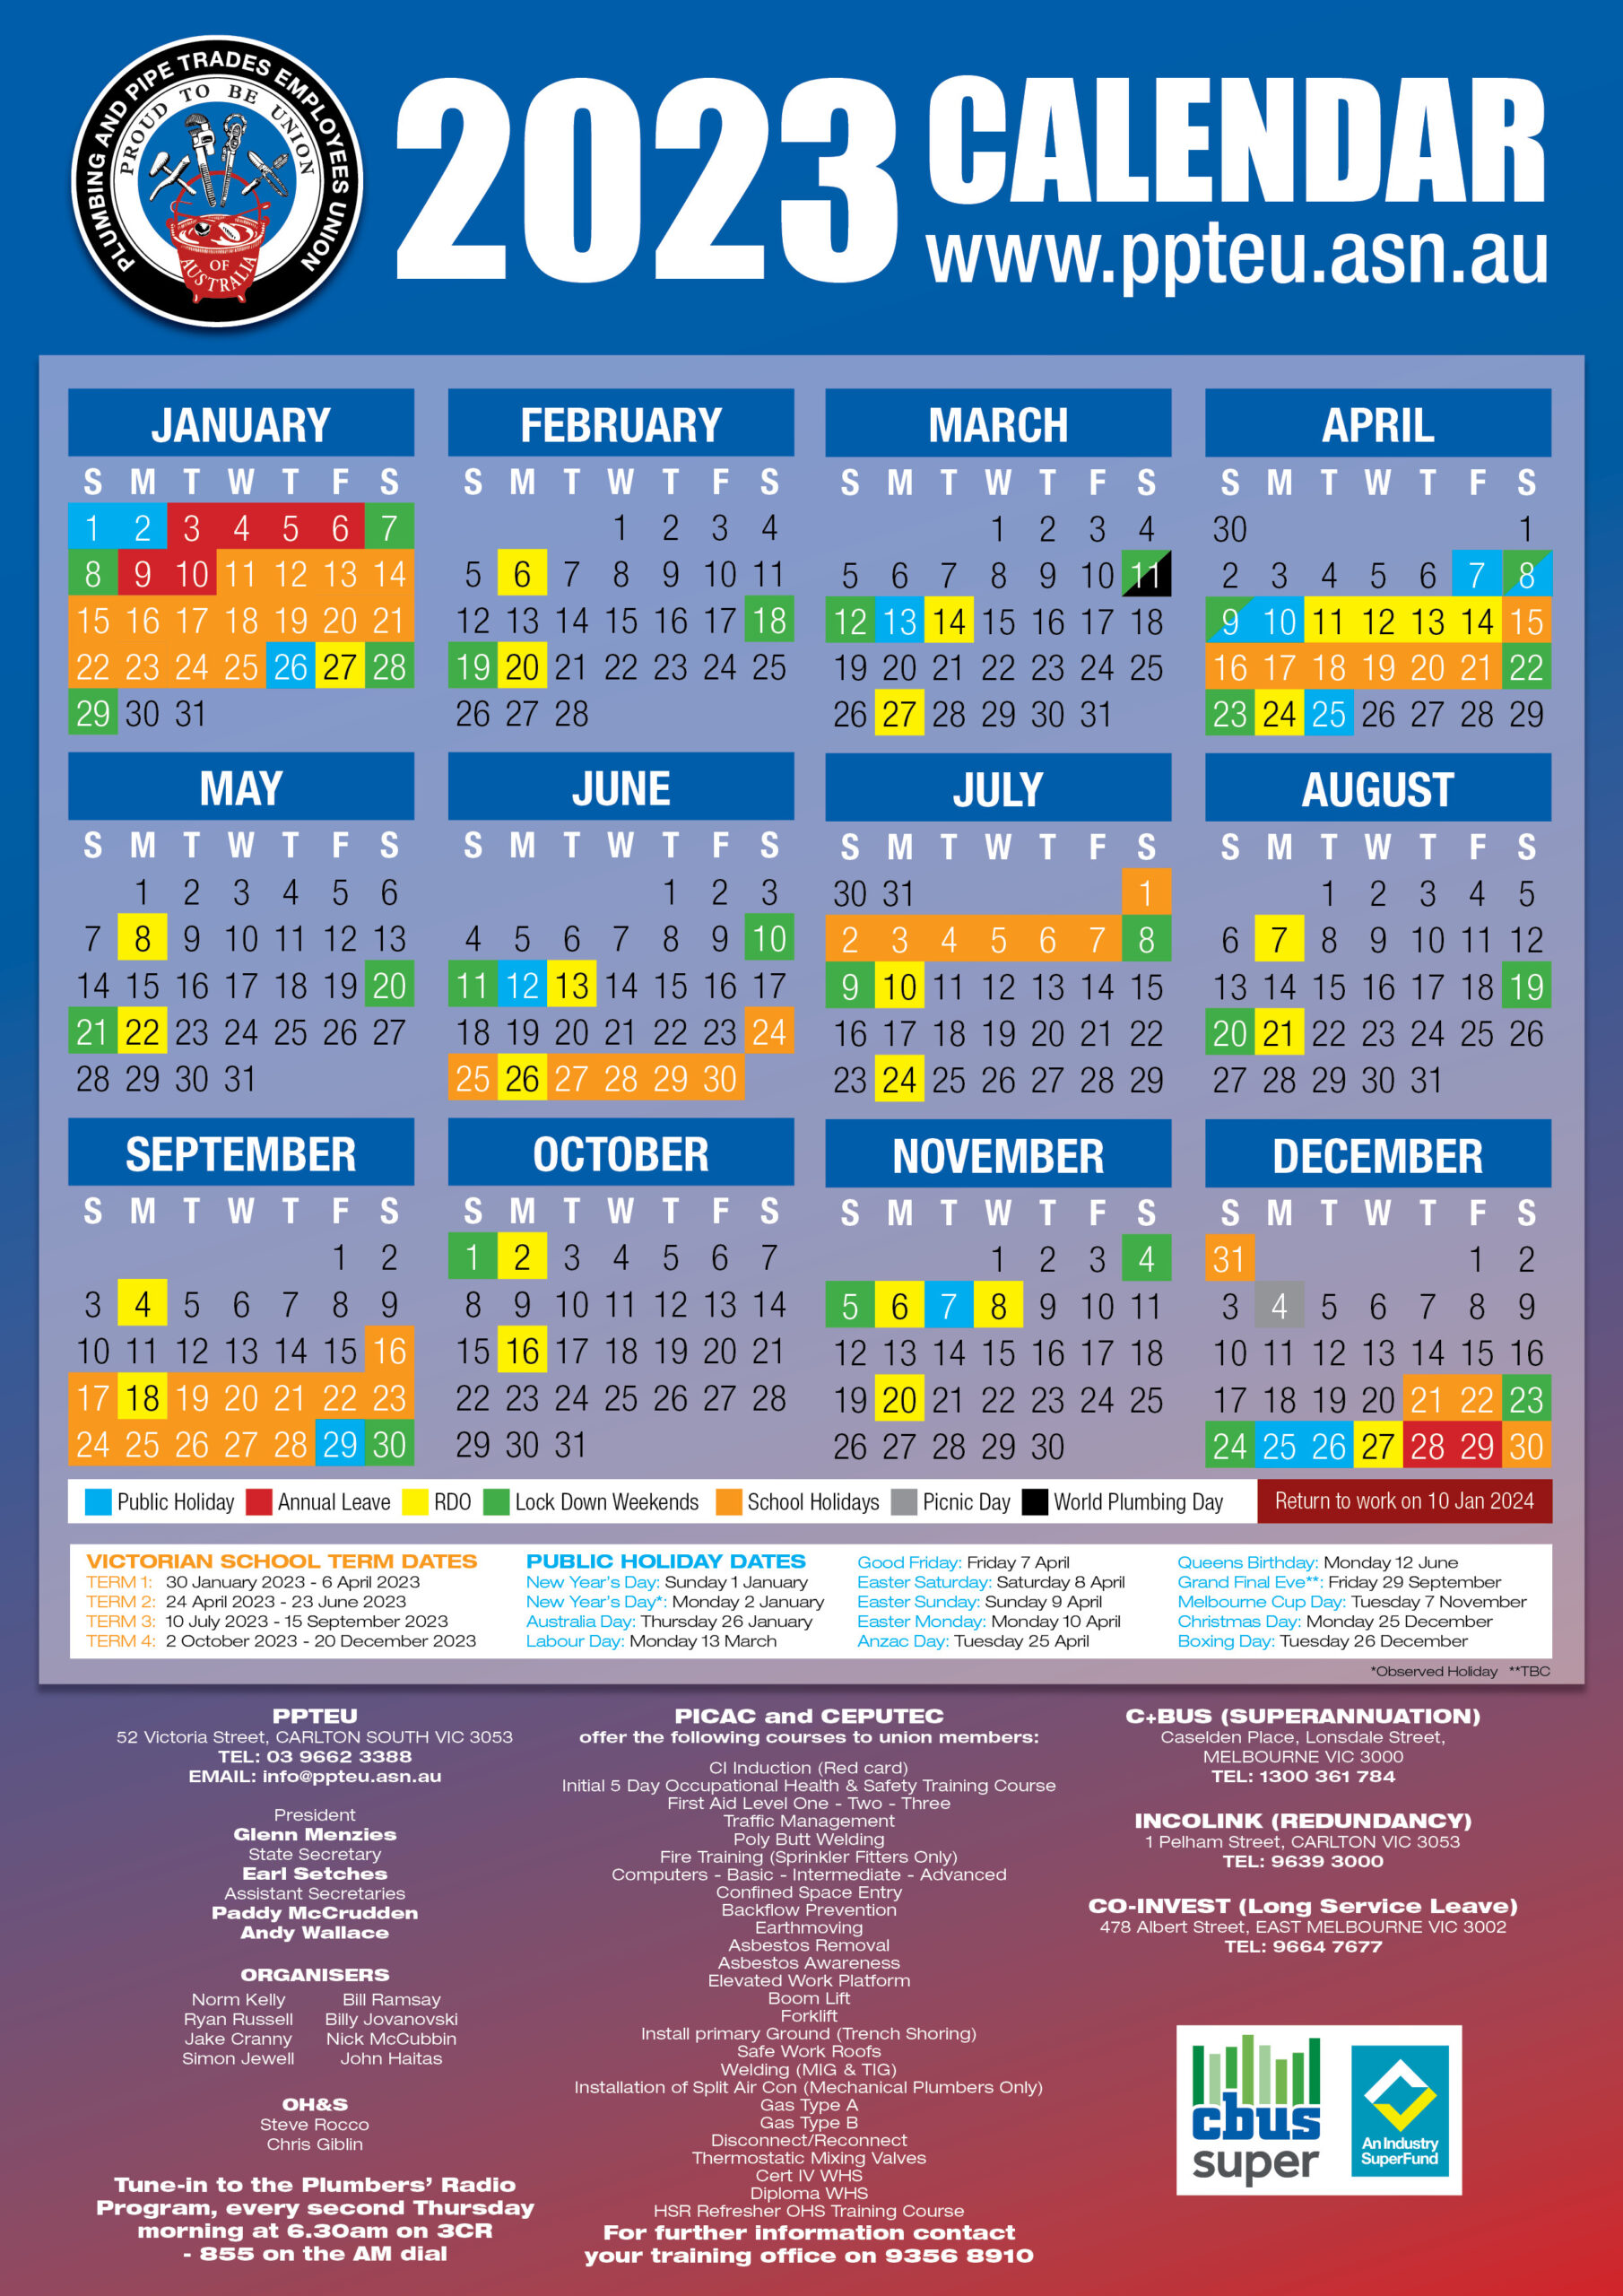 2024 Rdo Calendar Printable Printable Calendar 2024